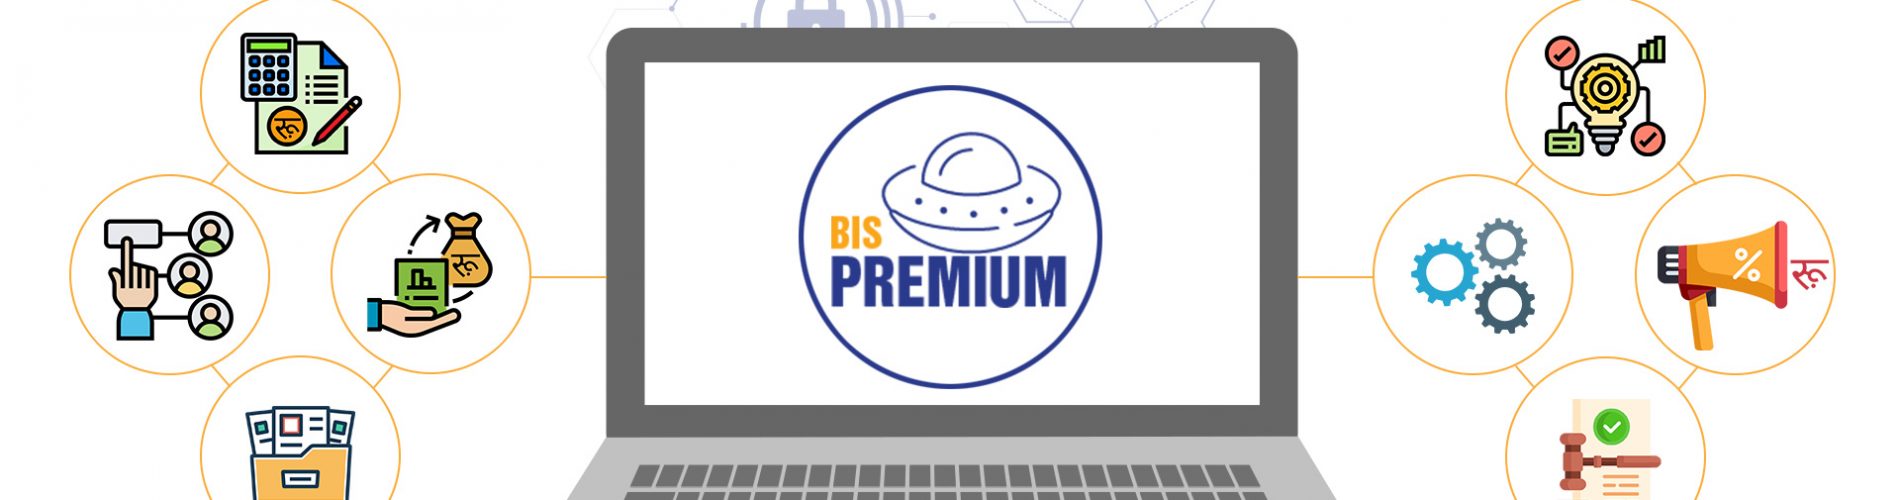 BIS-Premium